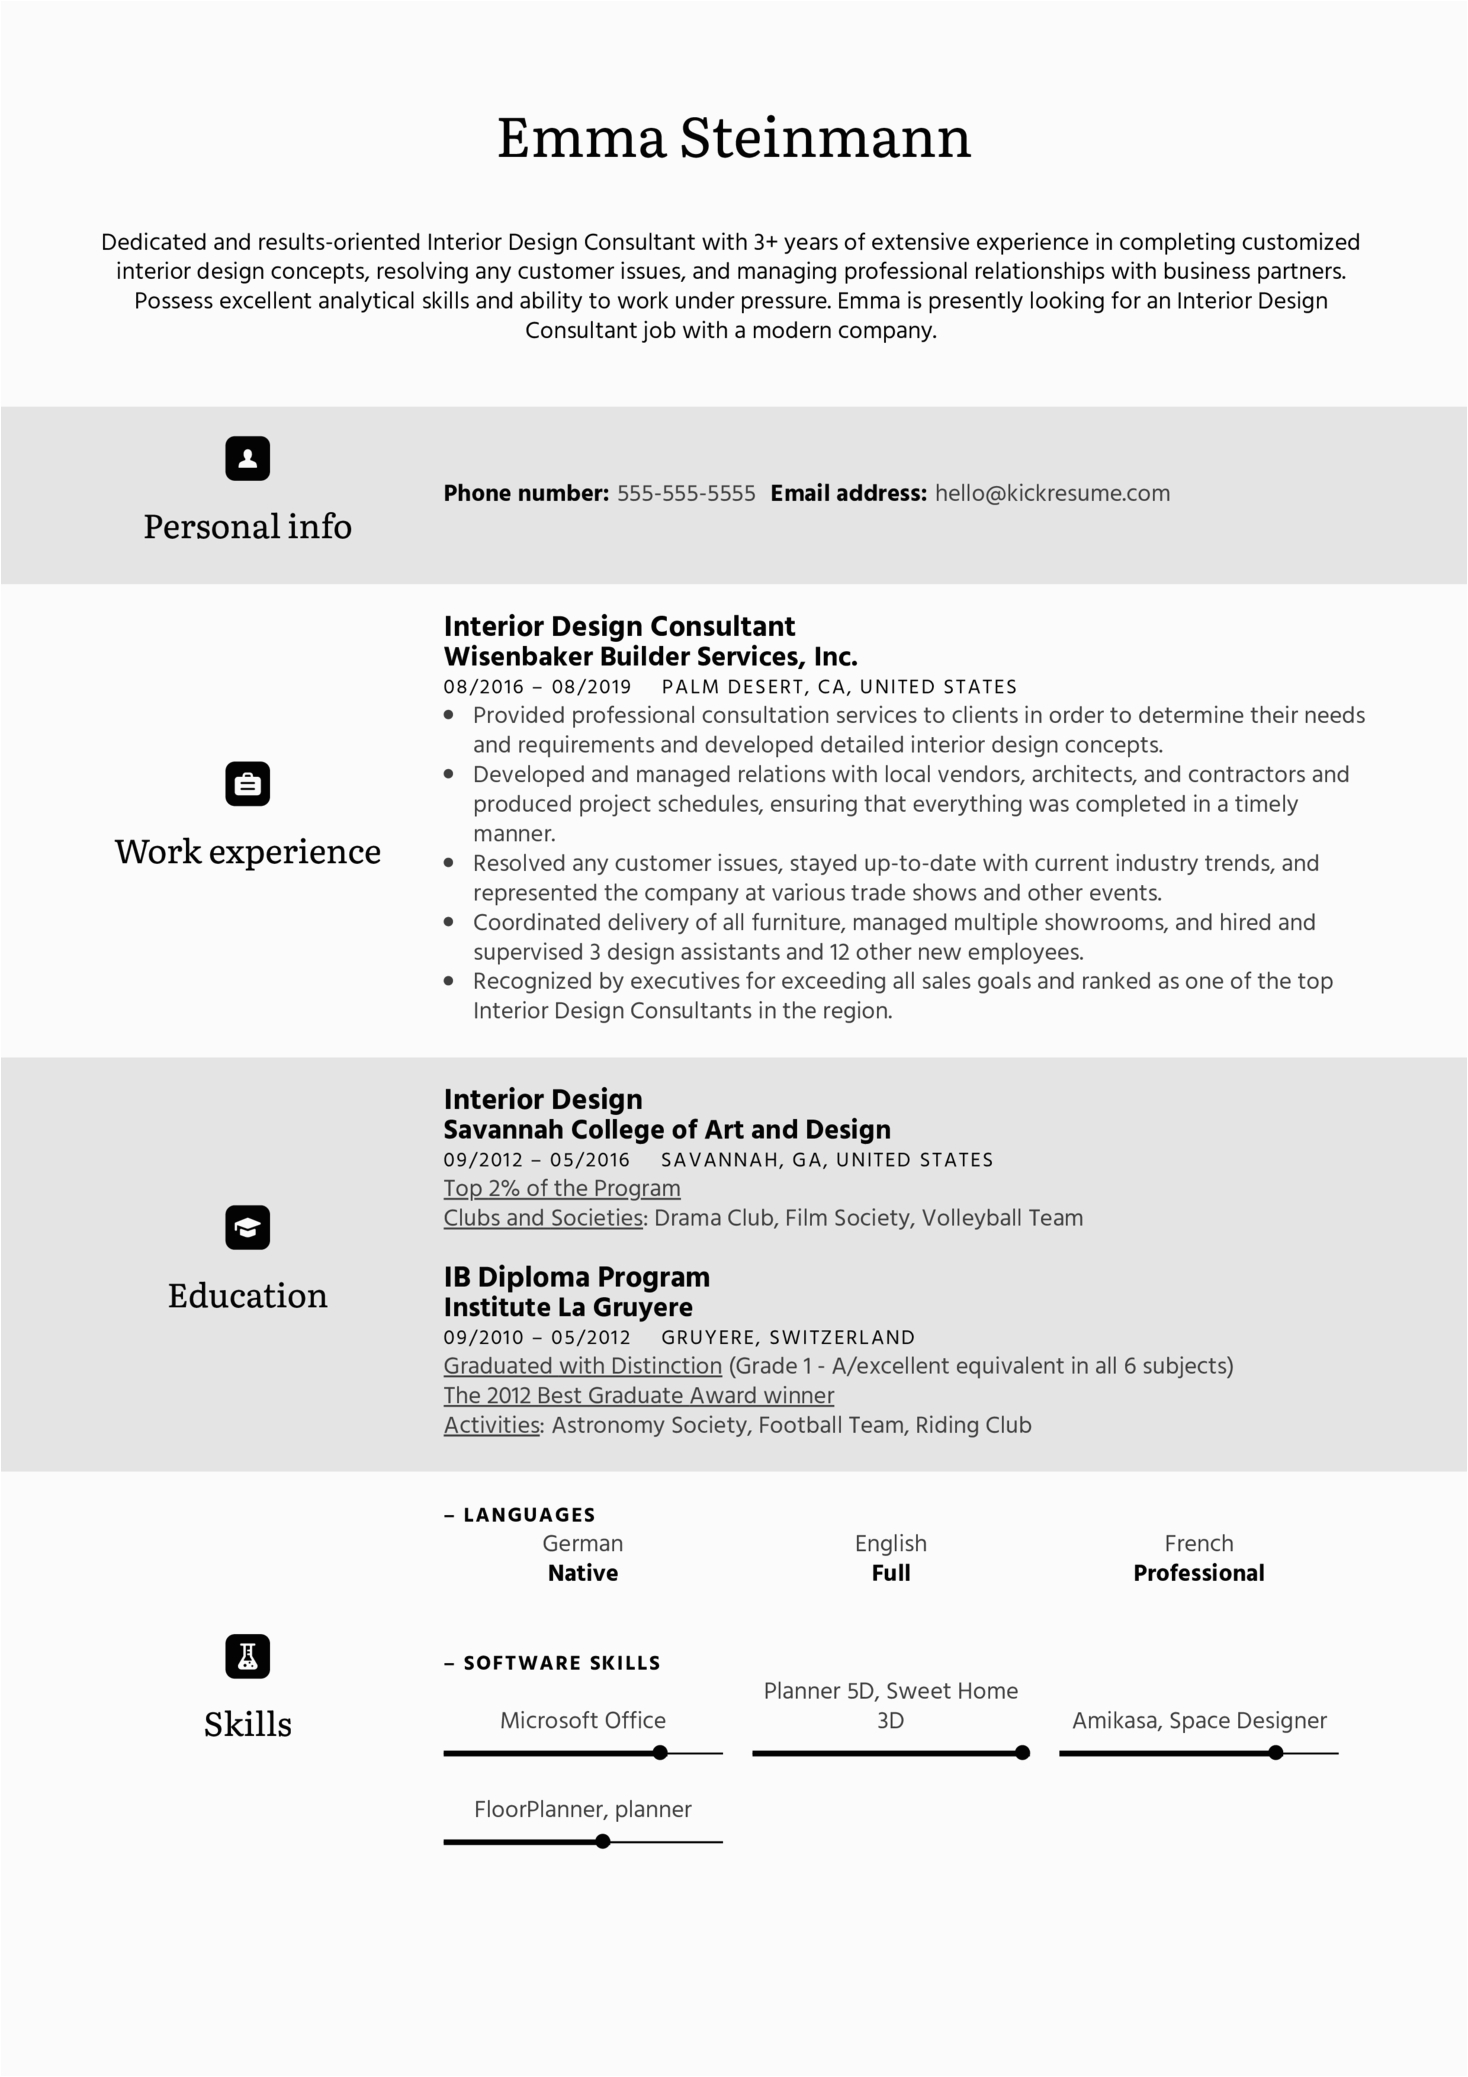 Sample Resume for Interior Design Consultant Interior Design Consultant Resume Sample